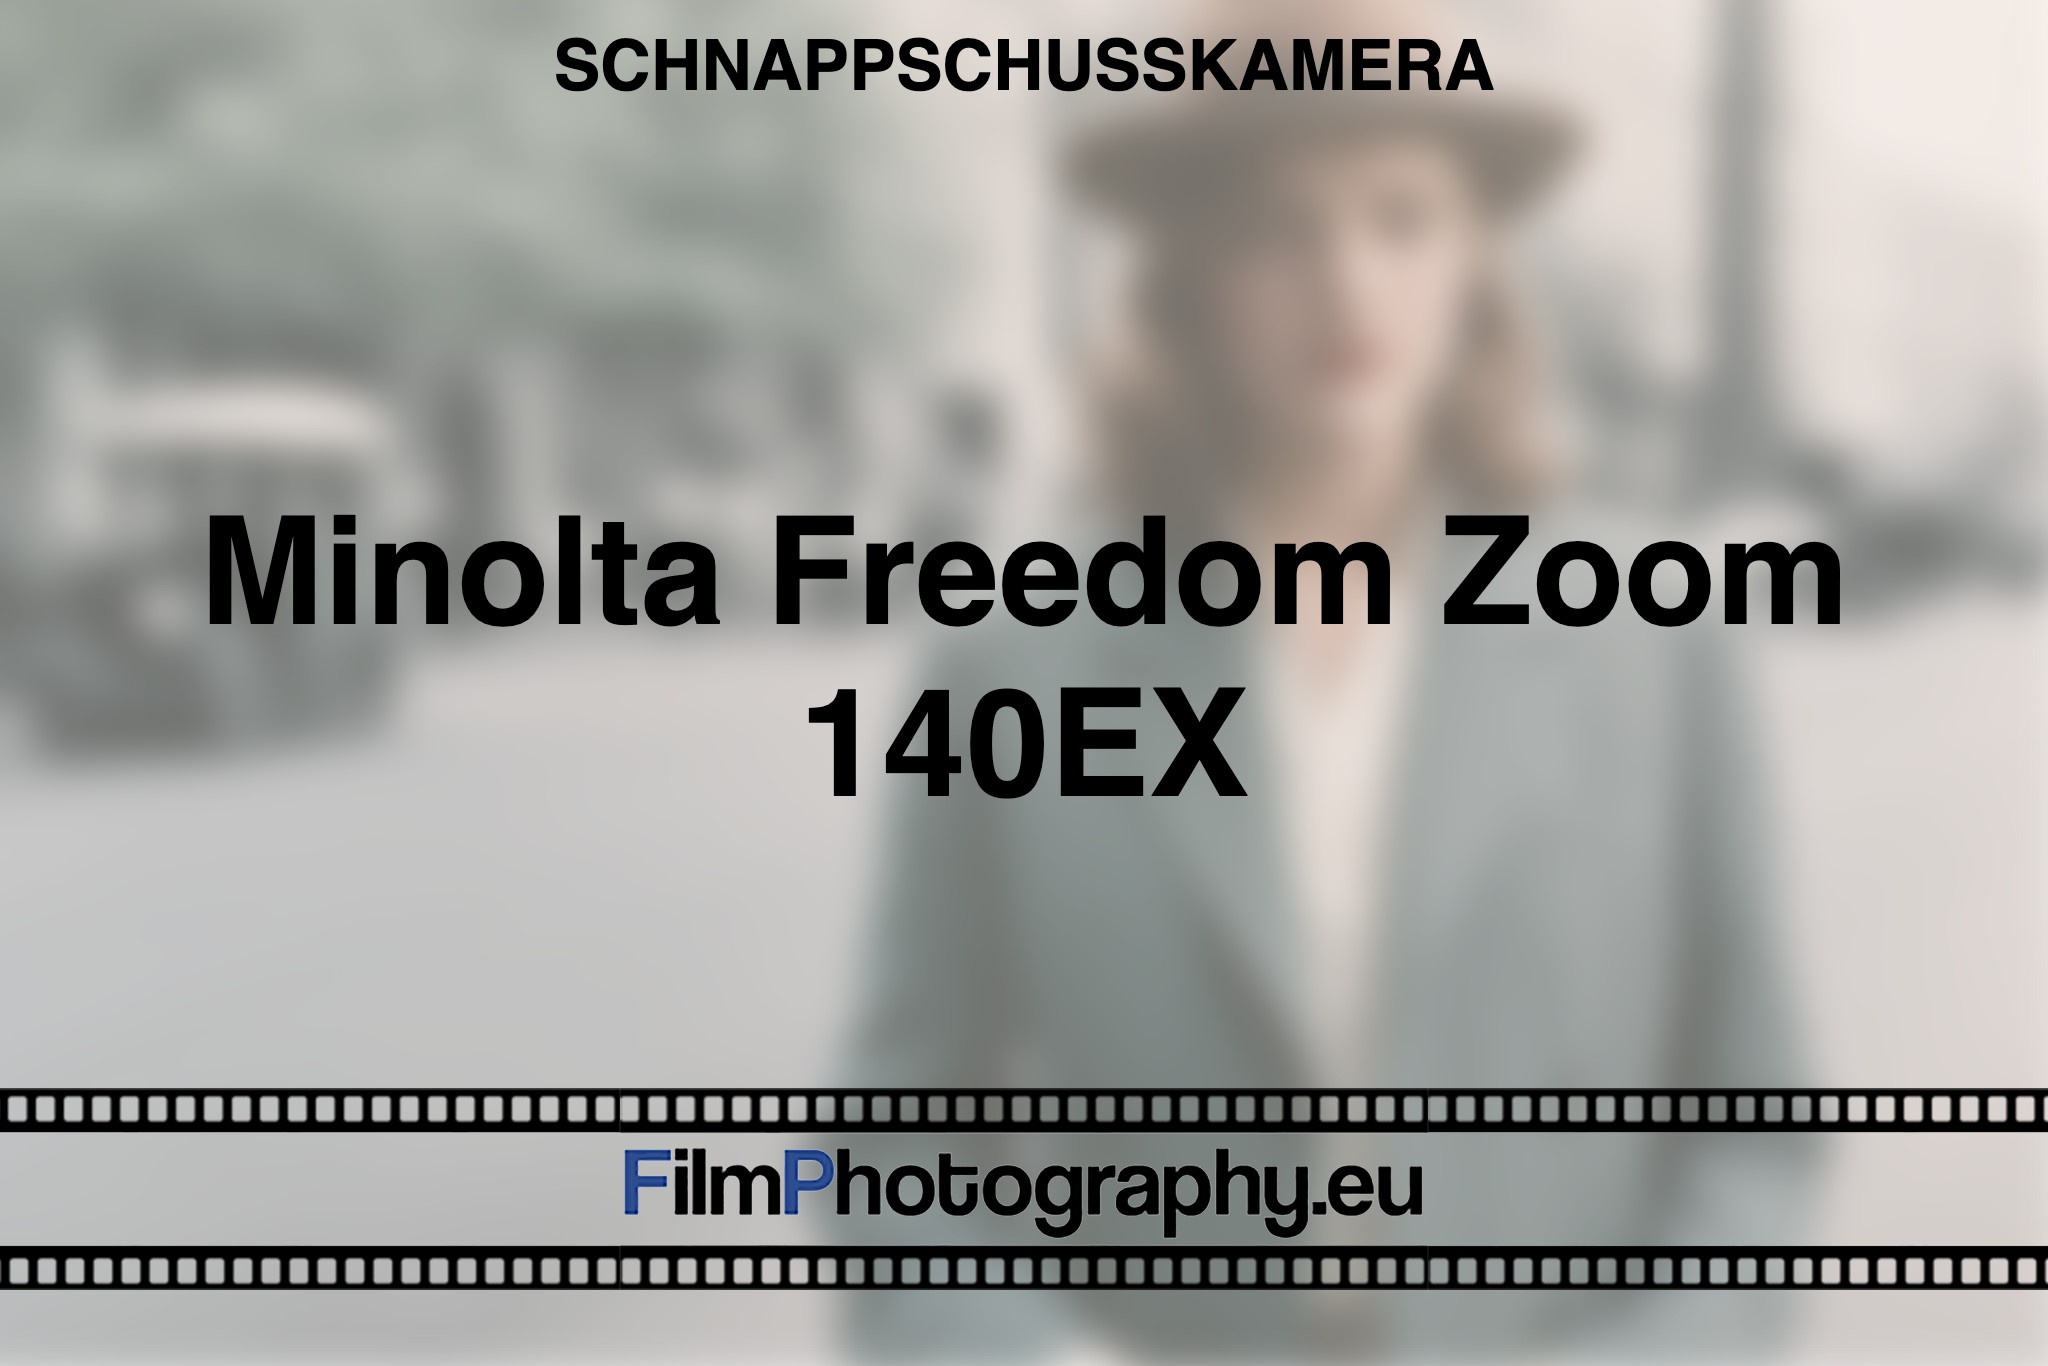 minolta-freedom-zoom-140ex-schnappschusskamera-bnv